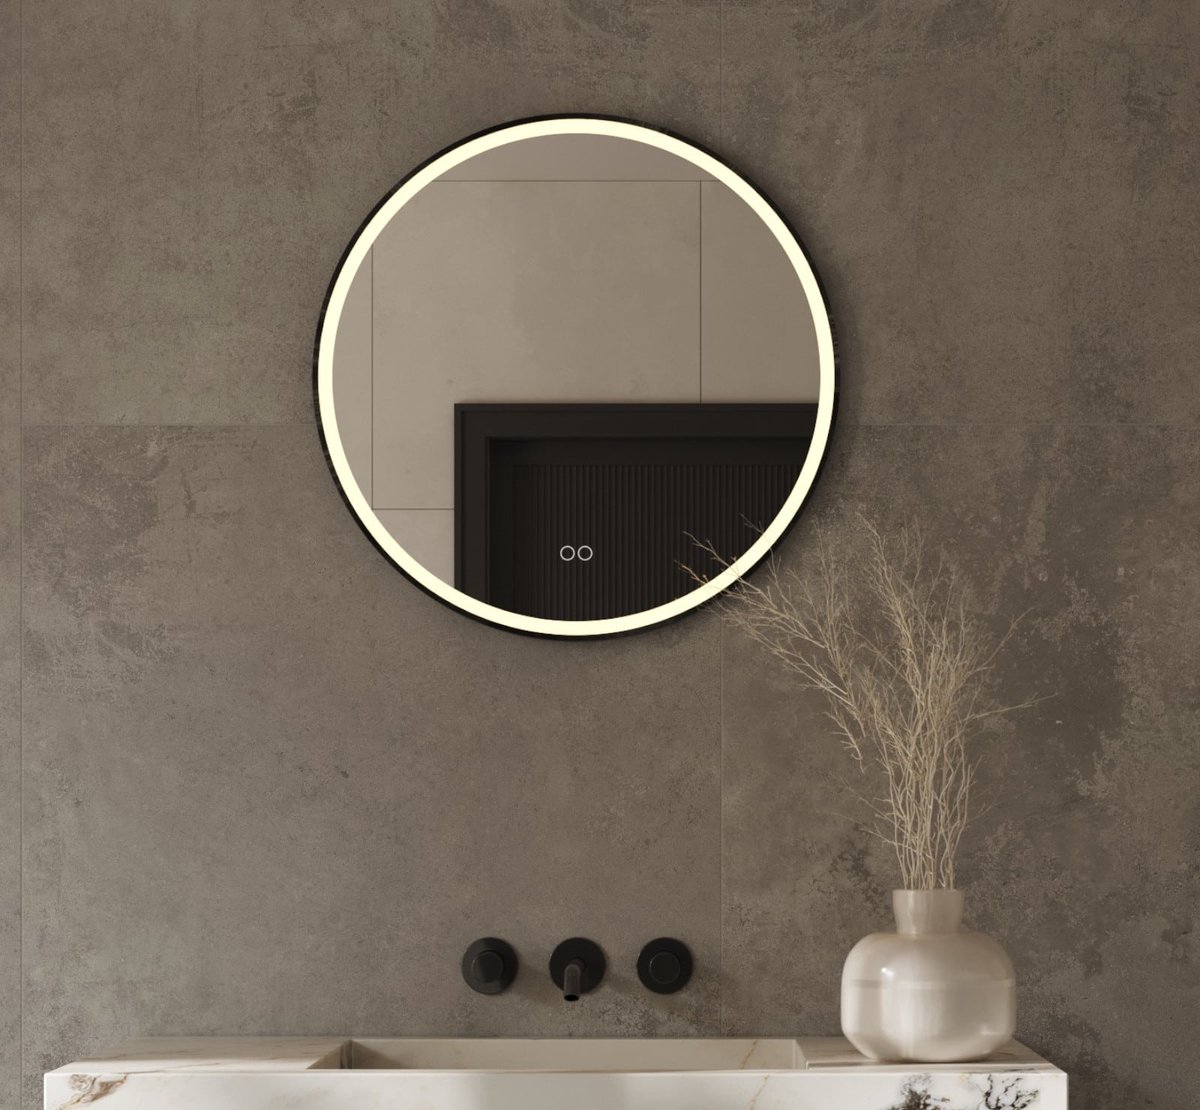 Ronde badkamerspiegel met LED verlichting, verwarming, touch sensor, dimfunctie en mat zwart frame 60x60 cm